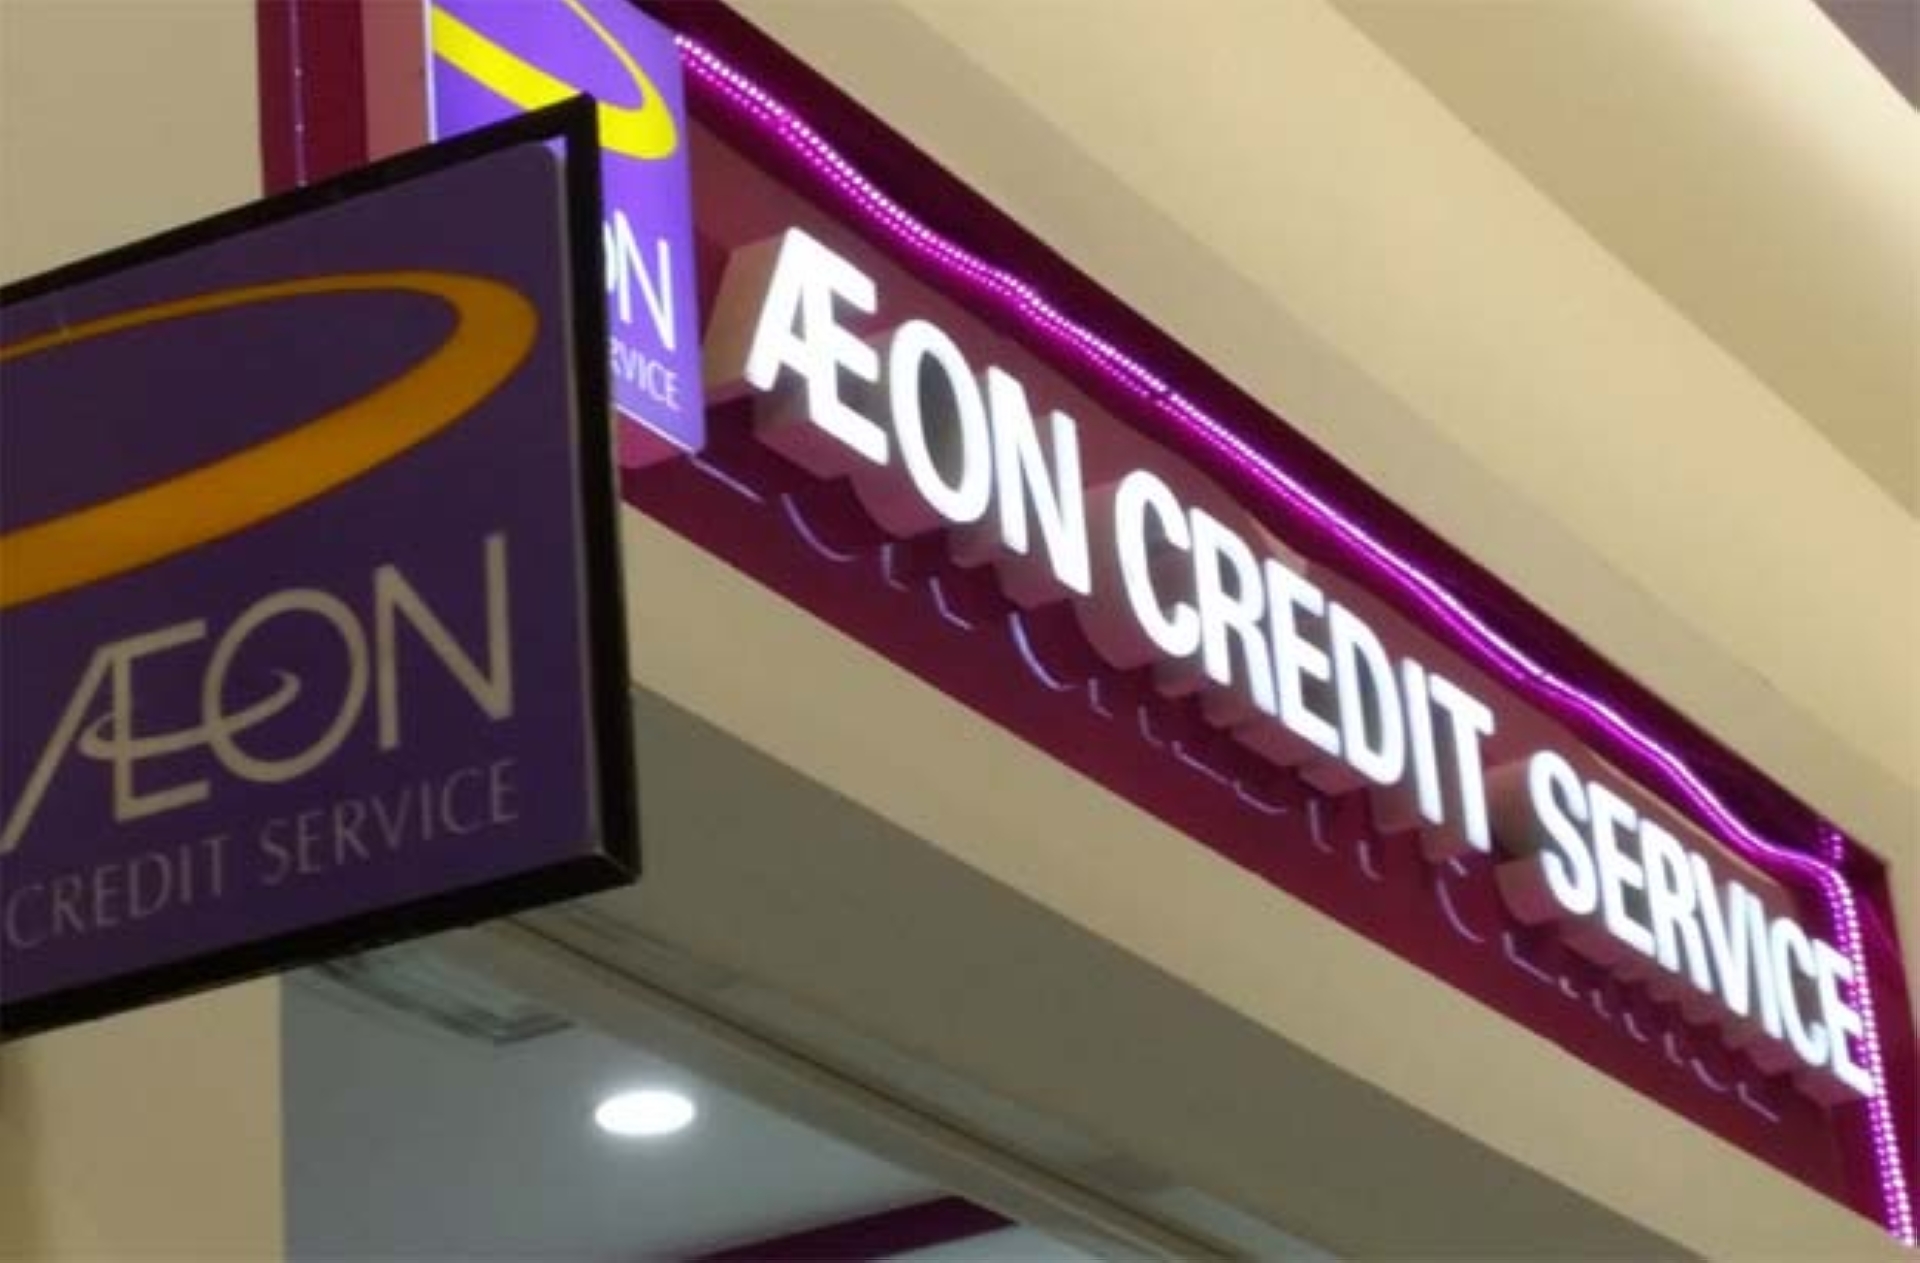 Aeon Credit Personal Loan Table  Swasta/kerajaan/glc tidak perlu